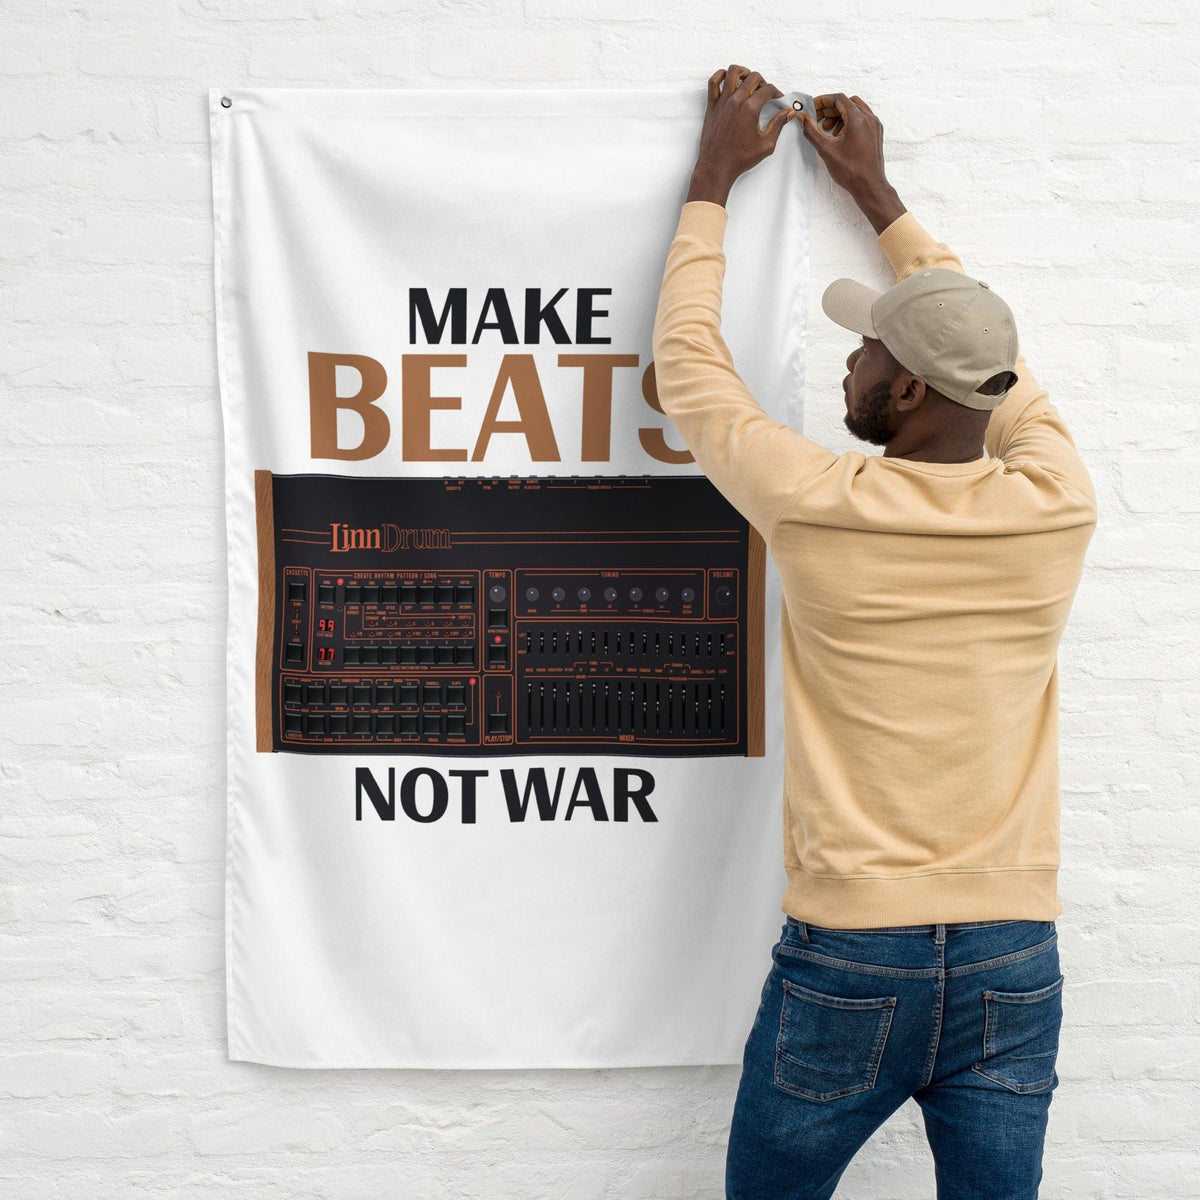 LinnDrum Drum Machine Artist Rendition "Make Beats Not War" Flag (Vertical) - Tedeschi Studio, LLC.